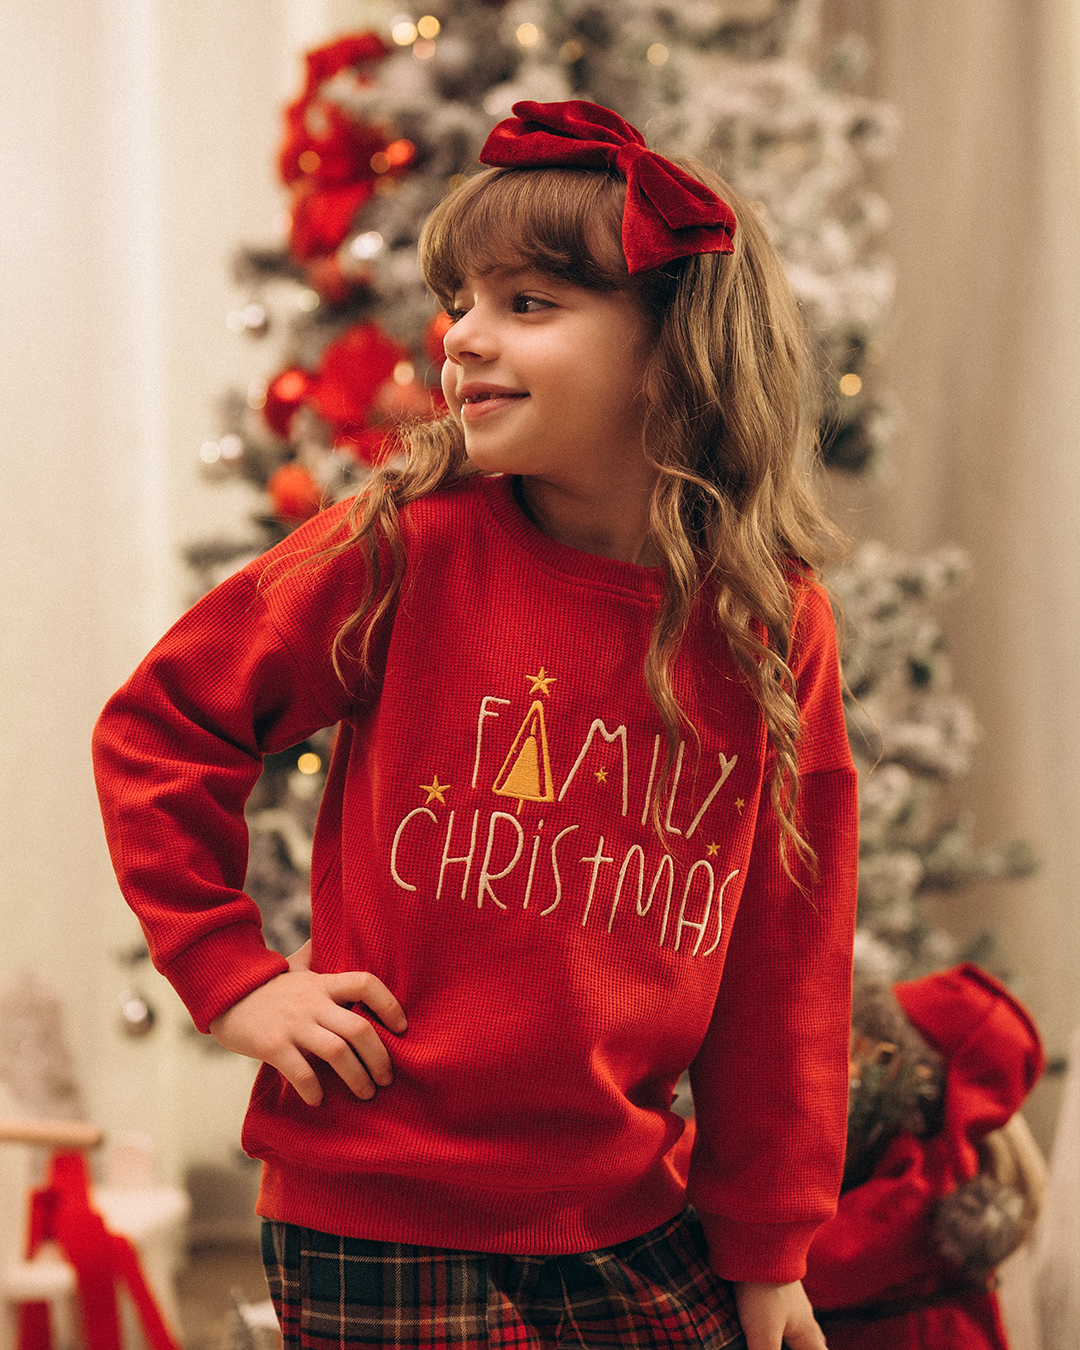 Unisex Christmas Pajama Embroidered Family Christmas 